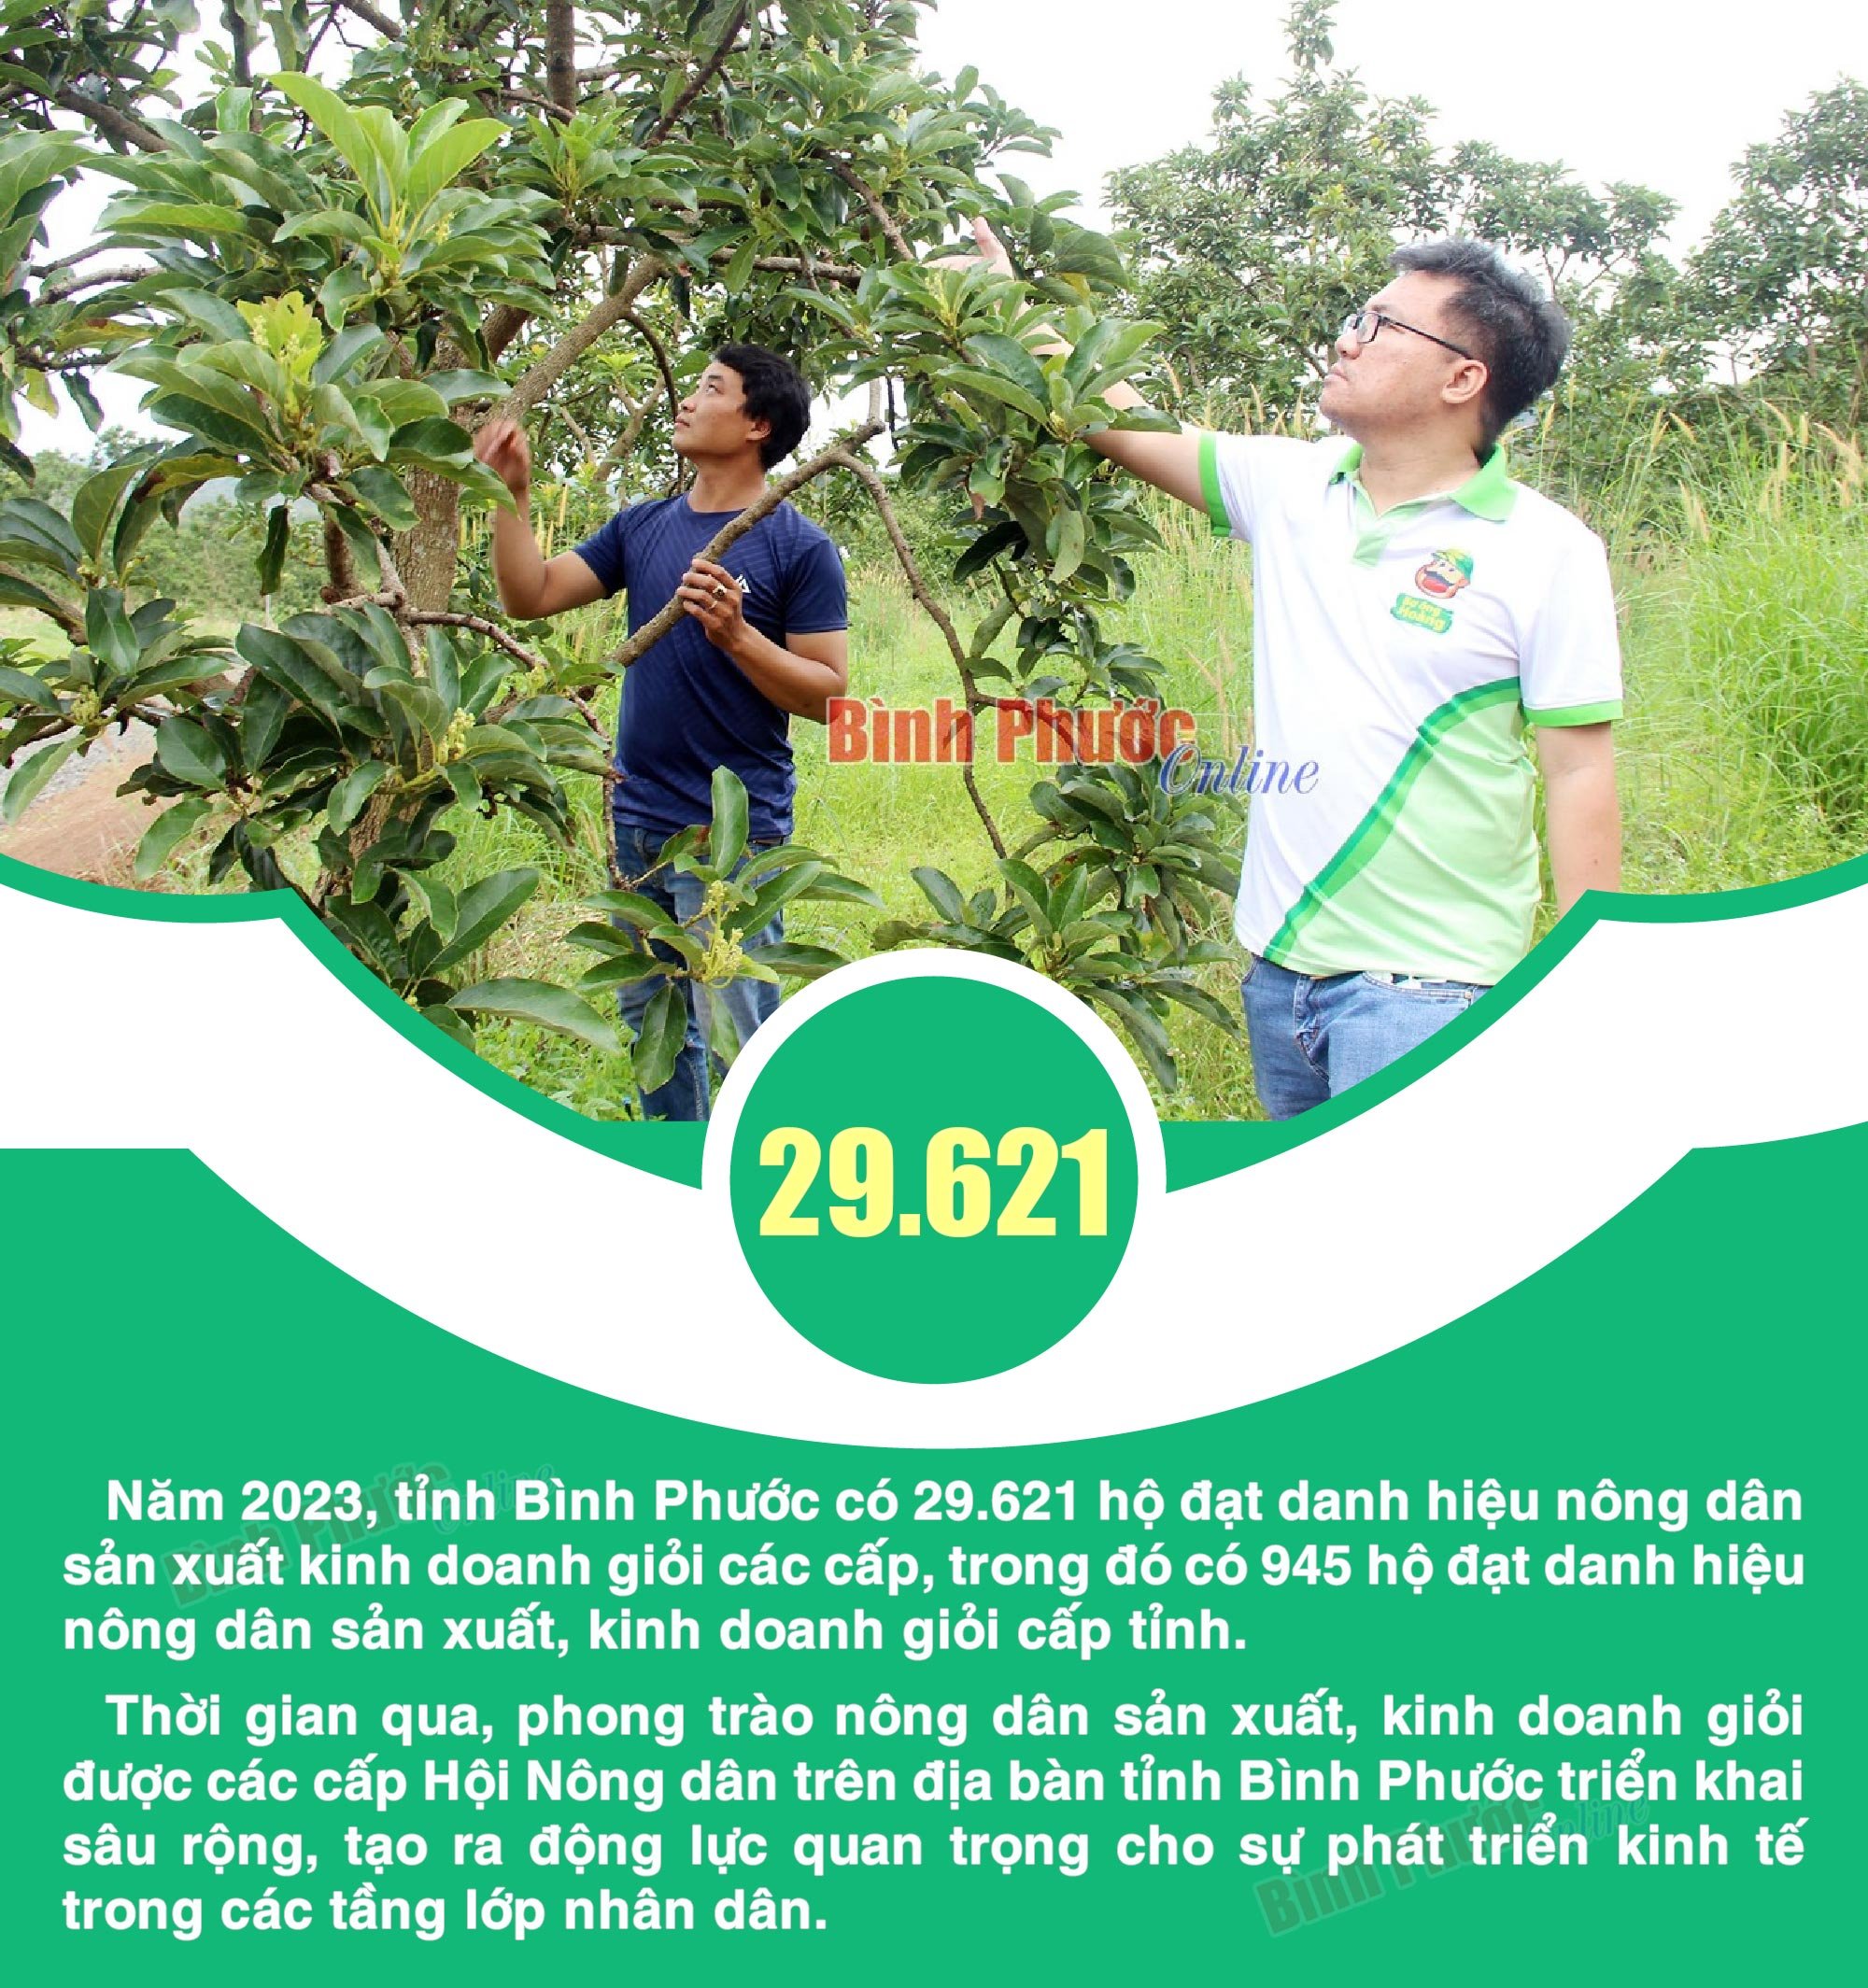 Bình Phước có hơn 29.600 hộ nông dân đạt danh hiệu sản xuất, kinh doanh giỏi các cấp